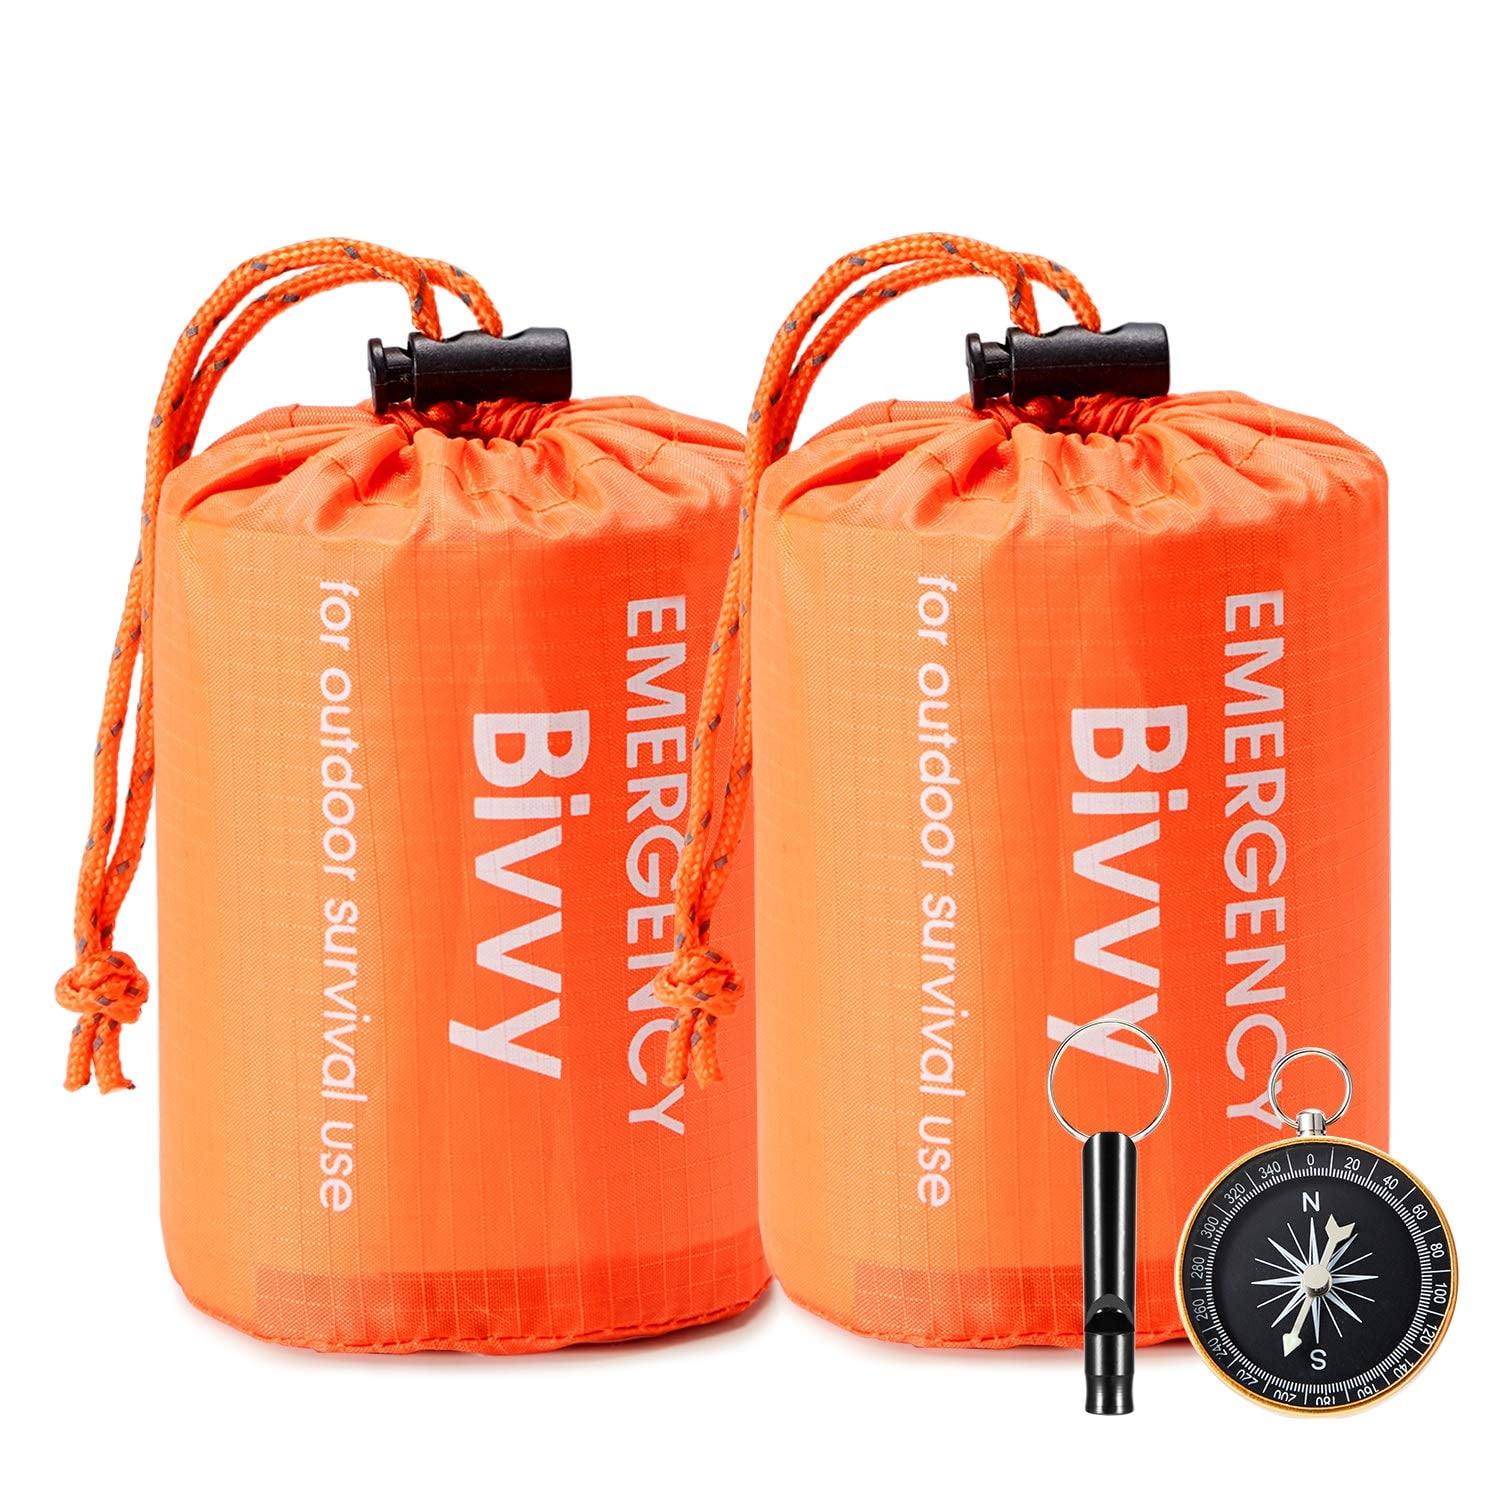 Survival Waterproof Lightweight Thermal Emergency Sleeping Bag Bivy Sack 